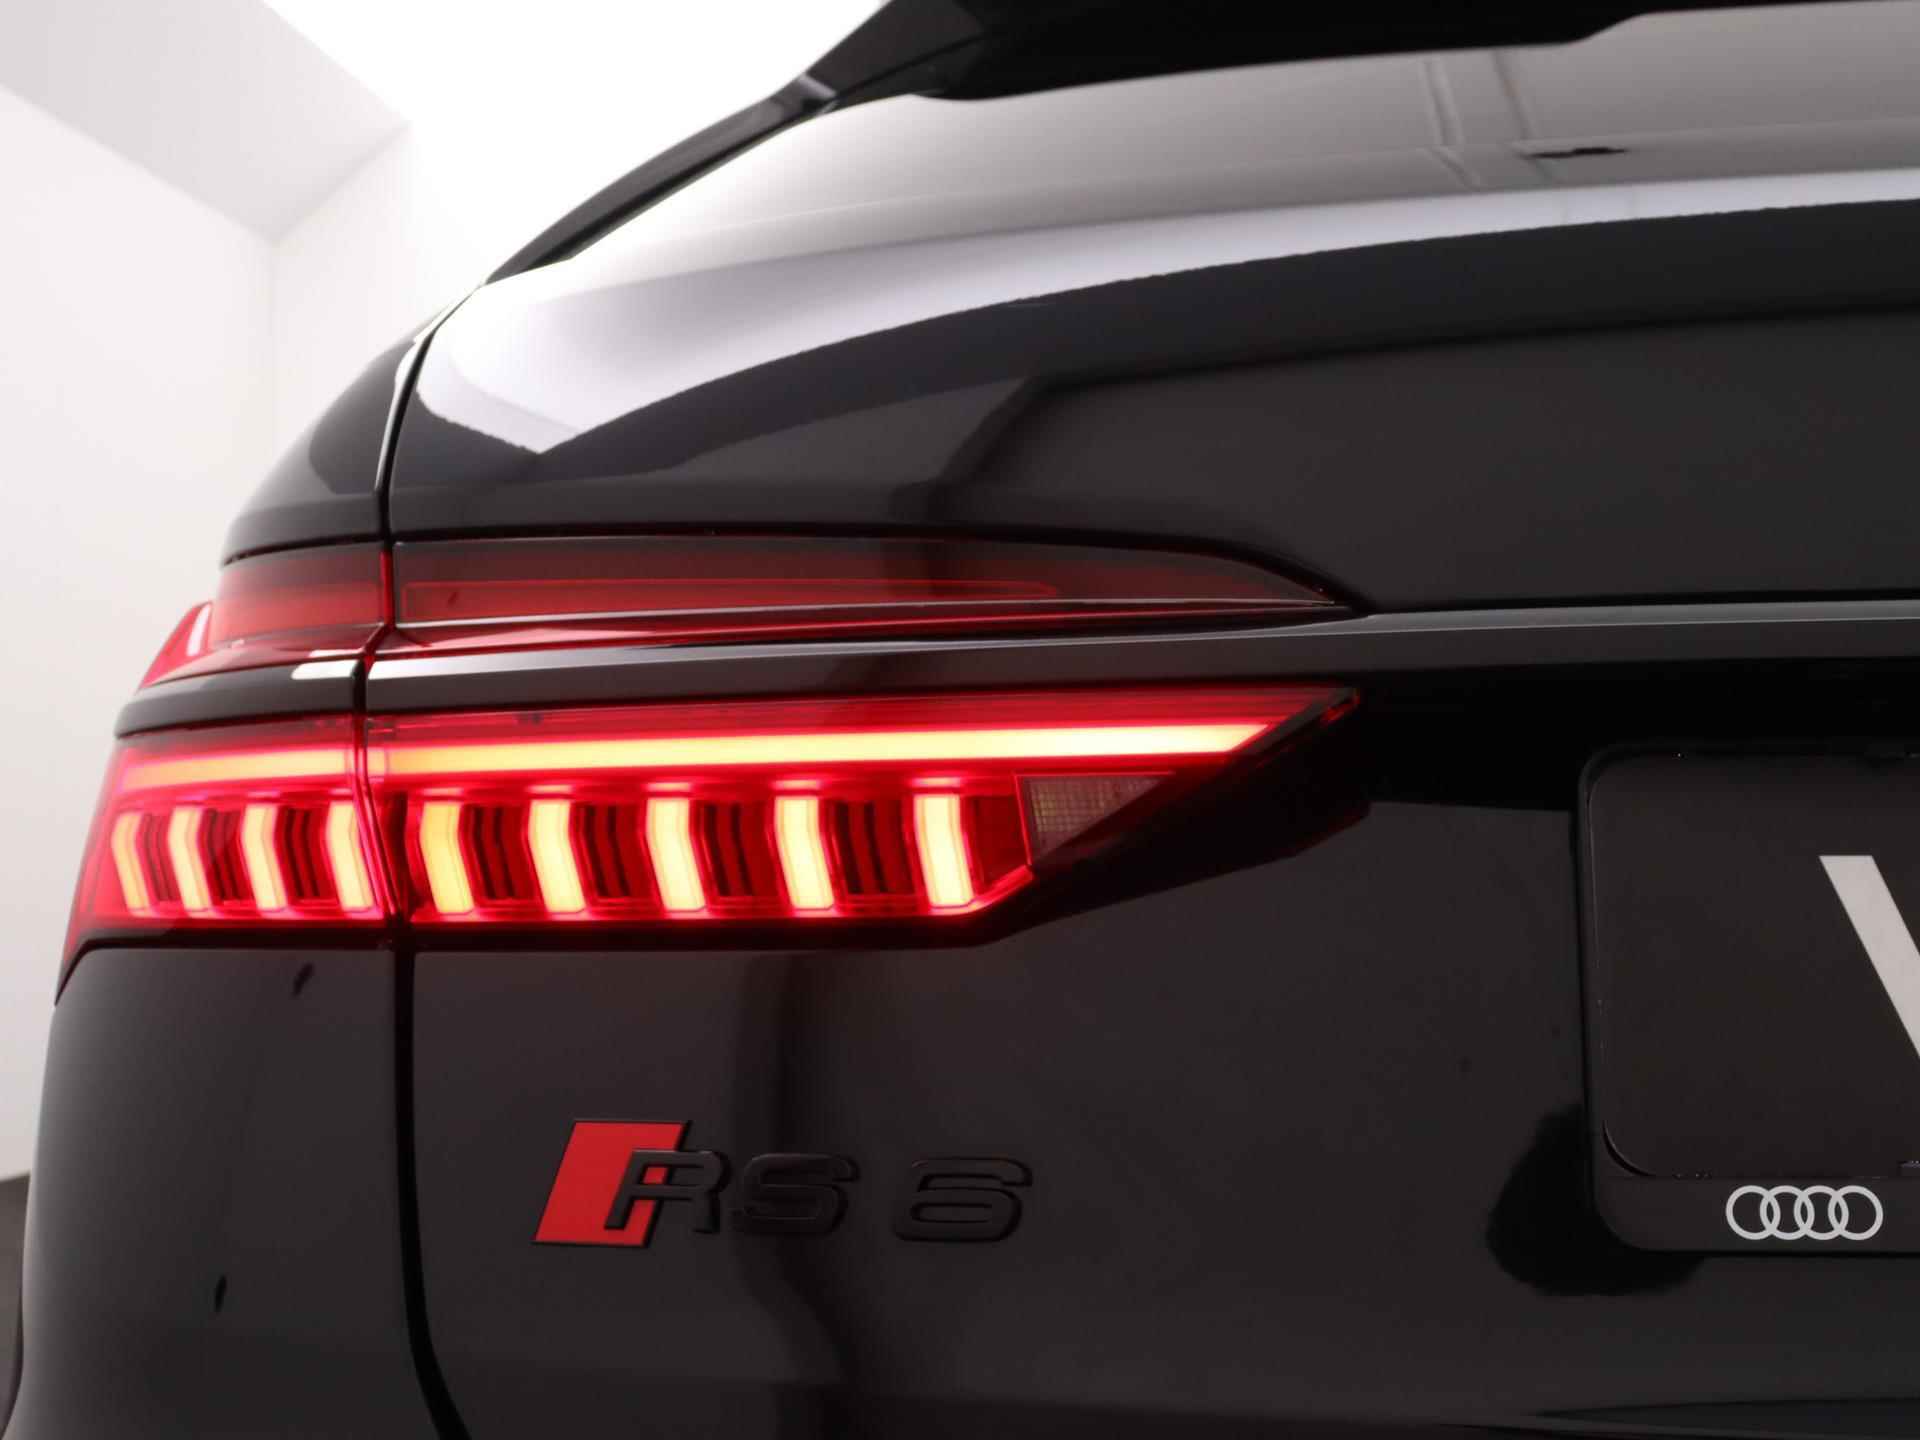 Audi RS 6 Avant TFSI quattro 600 PK | Head-up display | Bang & Olufsen Soundsystem | 22 inch lm velgen | RS Dynamic Pakket Plus | RS Design pakket Rood |Optiekpakket Zwart Plus | Panorama dak | RS Sportuitlaat | Keramische remschijven Rood | RS Sportonderstel Plus | Servosluiting deuren | Nu € 36.129,- ACTIEKORTING! | DIRECT LEVERBAAR! | - 33/35